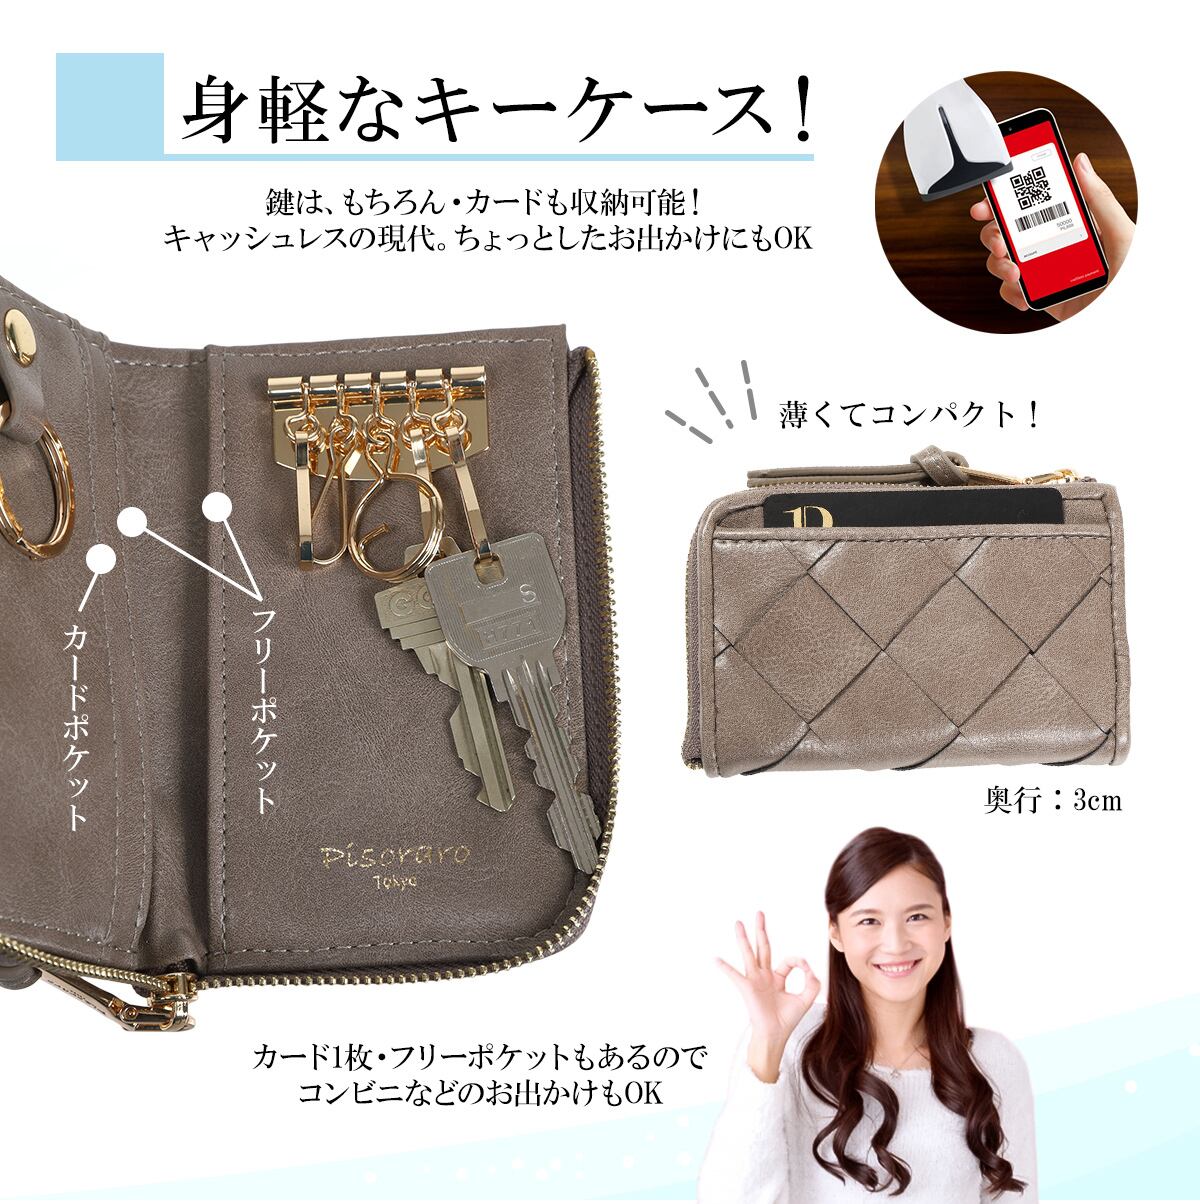 ピソラロPisoraro太メッシュキーケース5連キーケースミニ財布